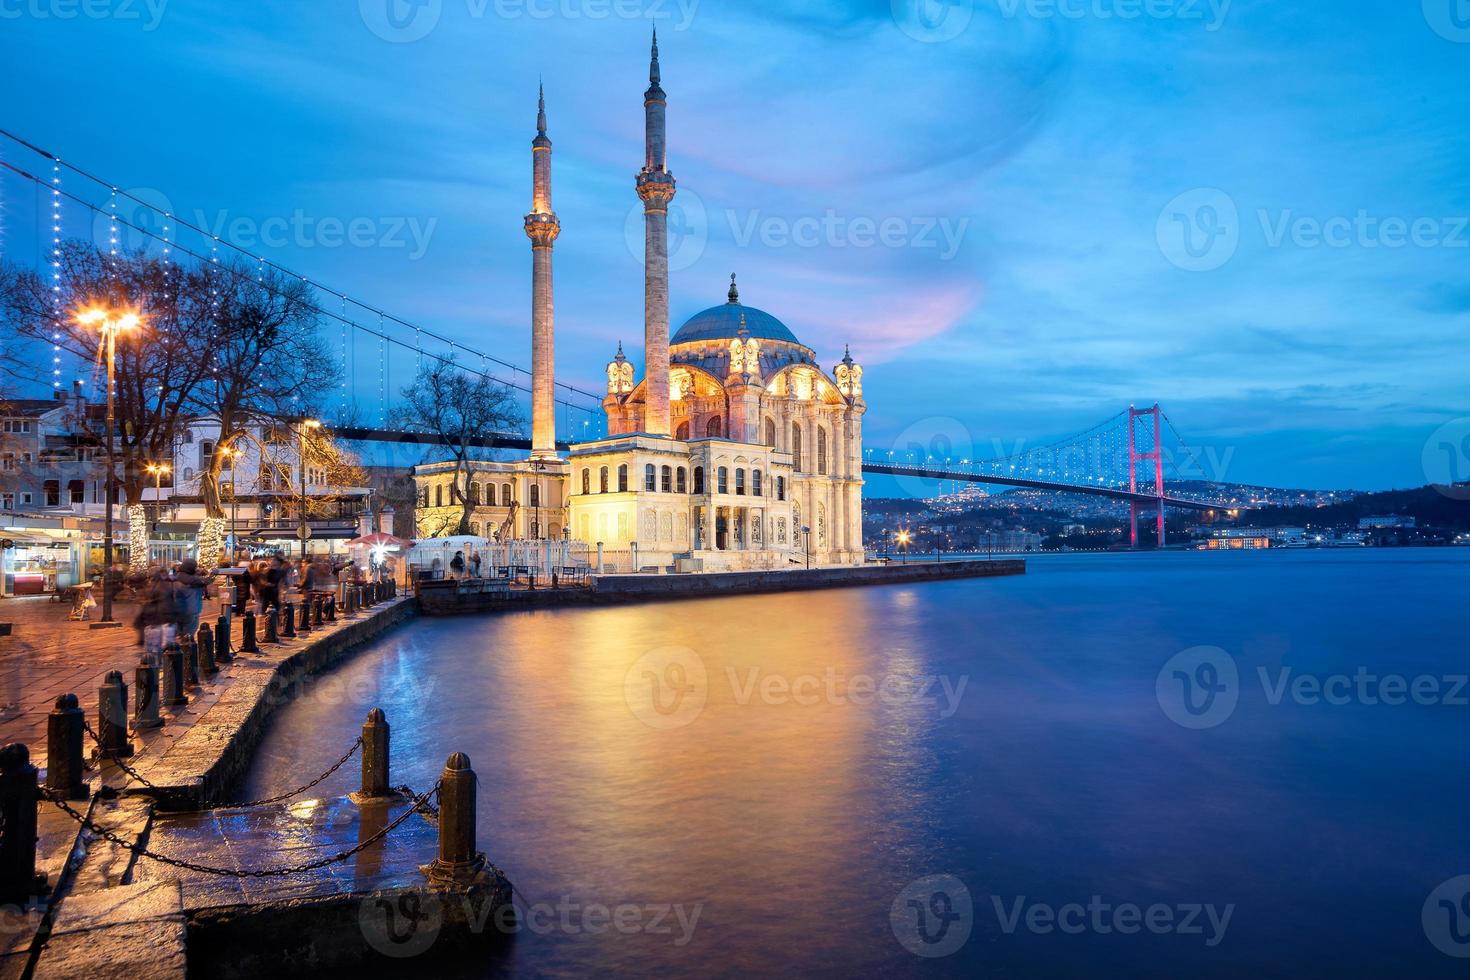 Mosquée d'Ortakoy également connue sous le nom de buyuk mecidiye camii à besiktas, Istanbul, Turquie photo